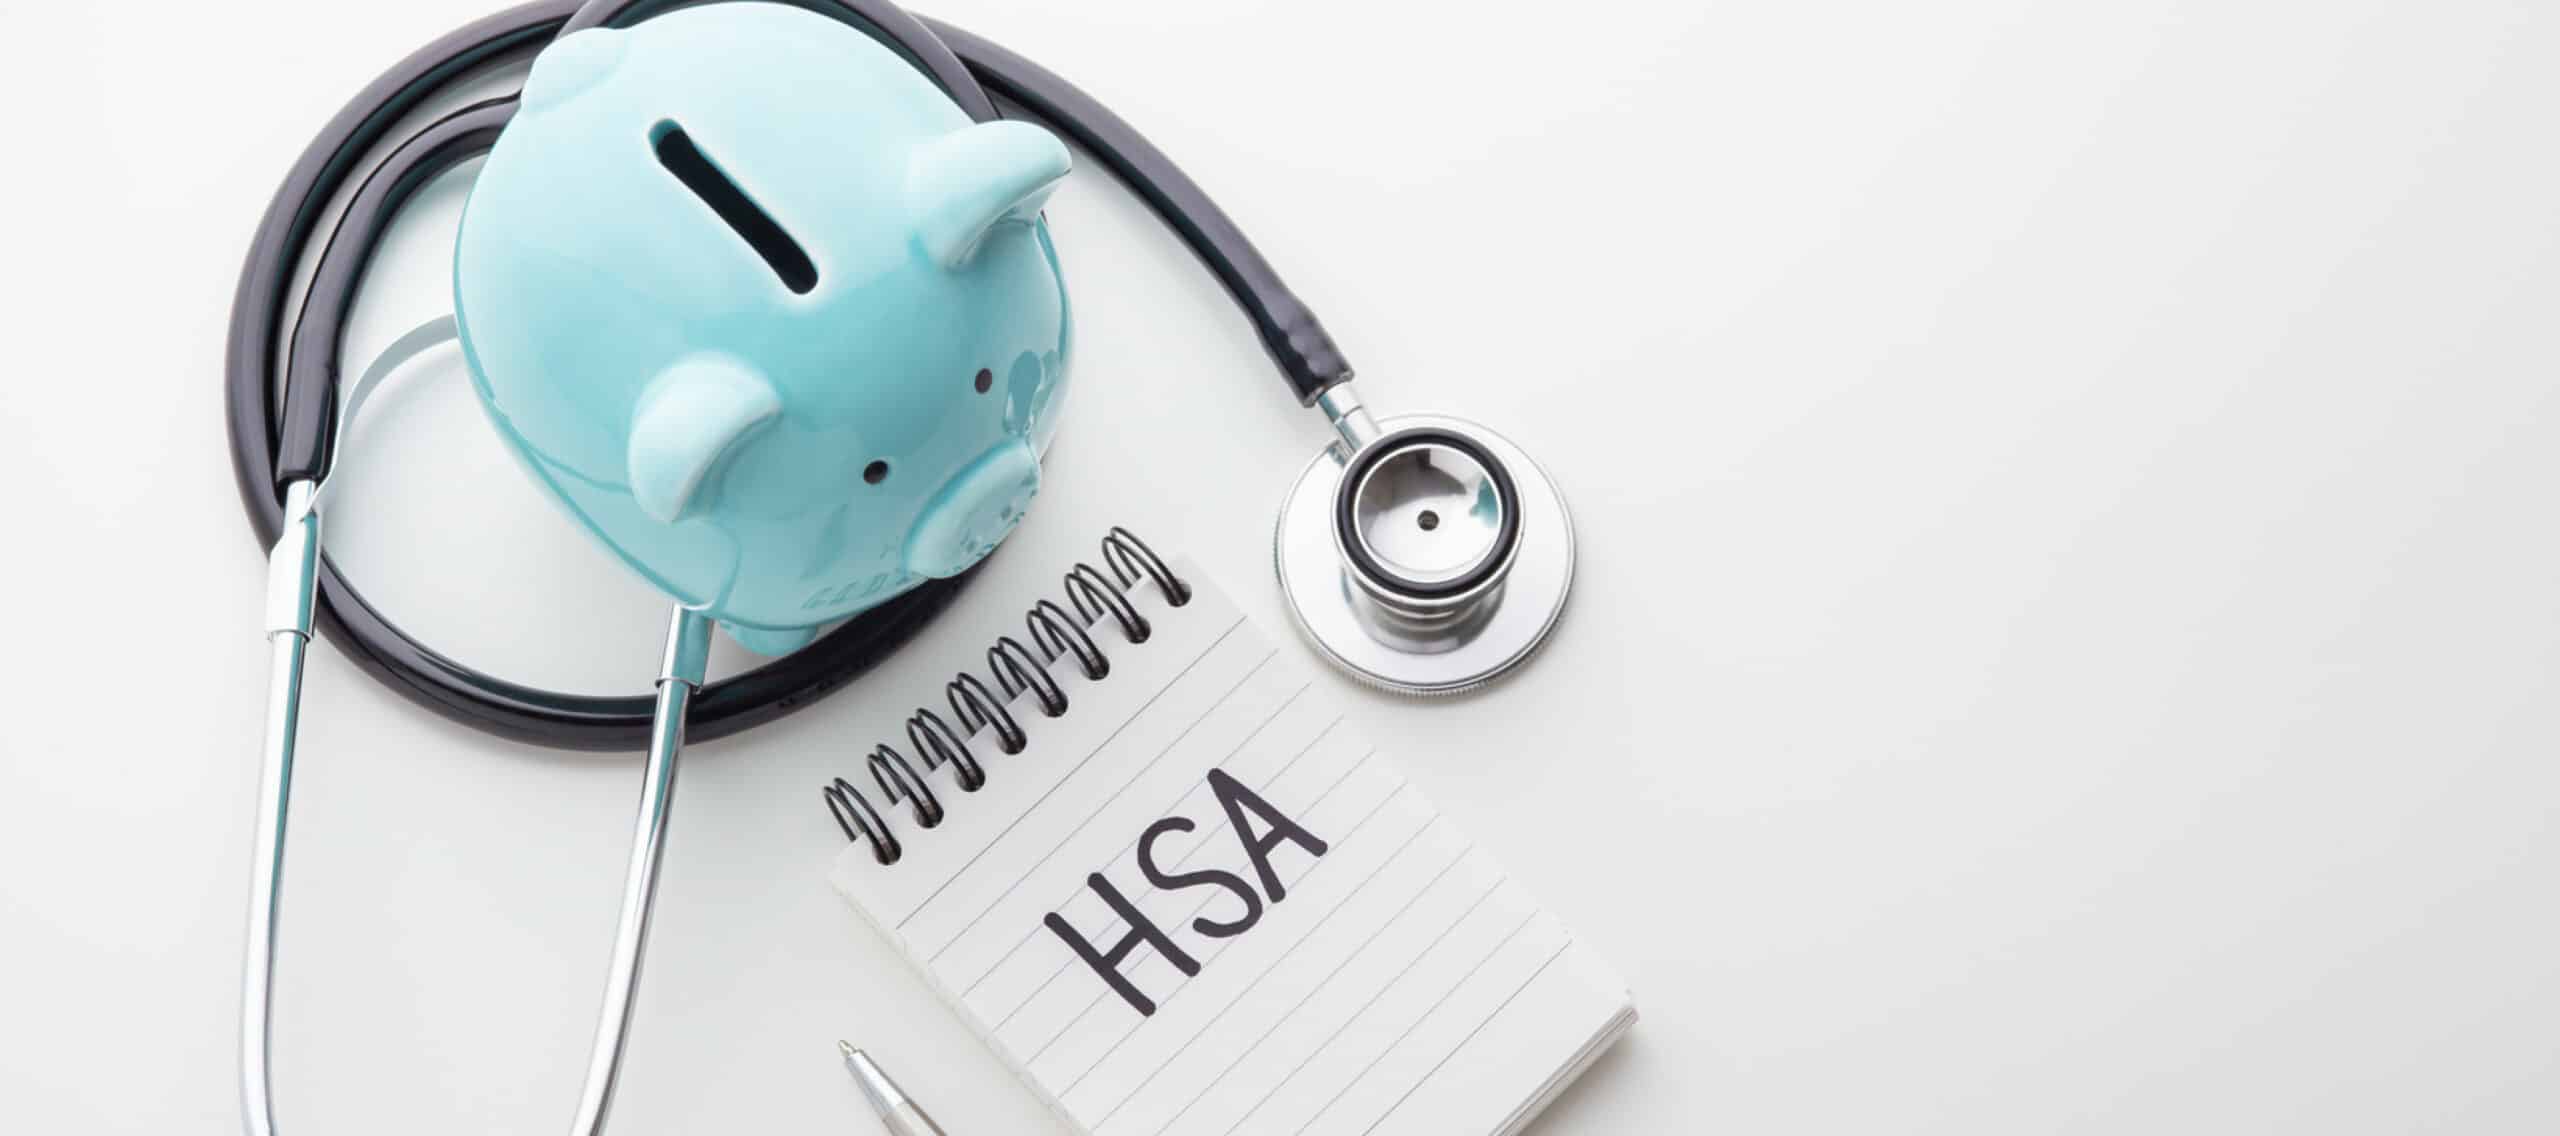 Understanding Health Savings Accounts